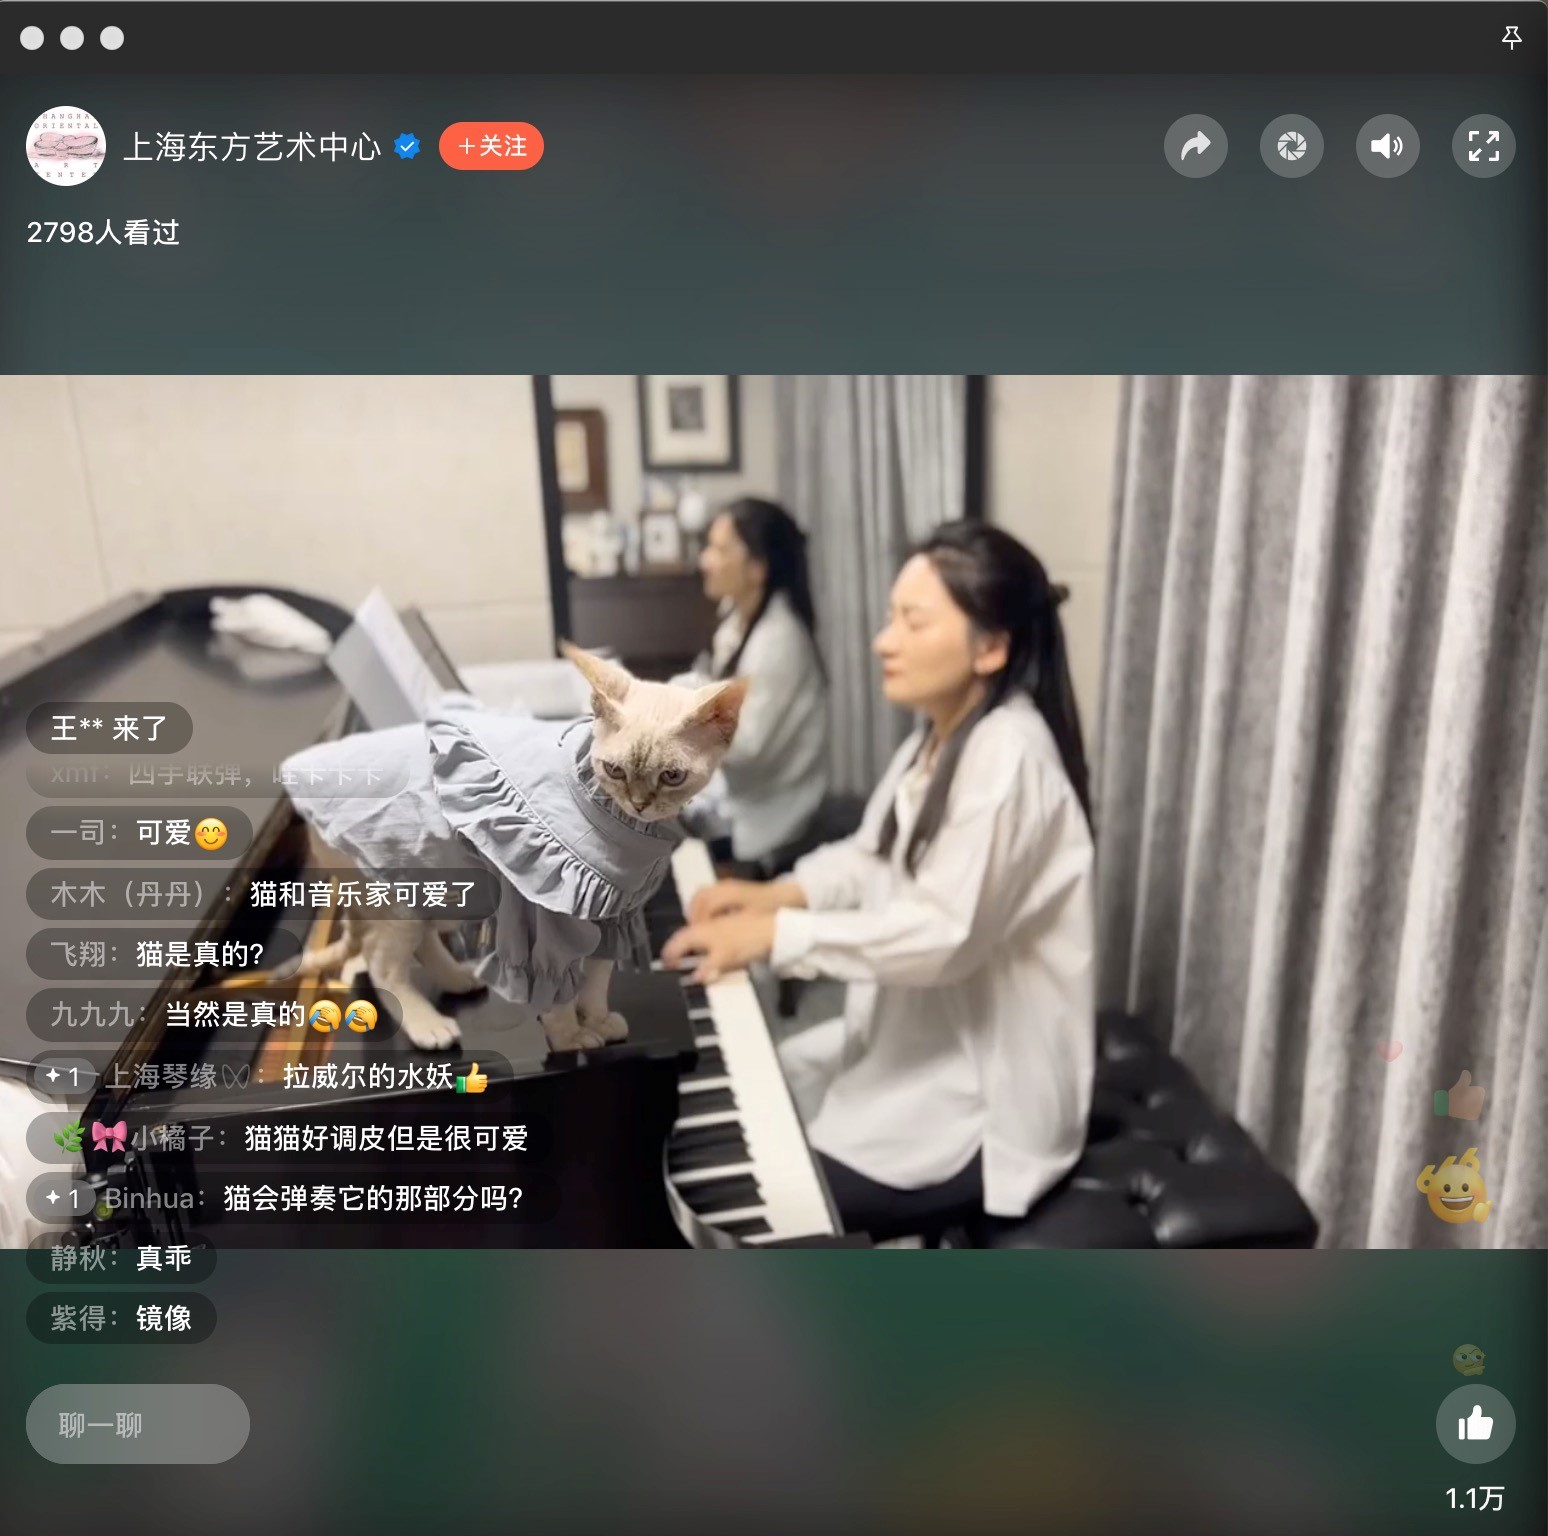 Wei Lala accompanies Wei Yun to practice the piano